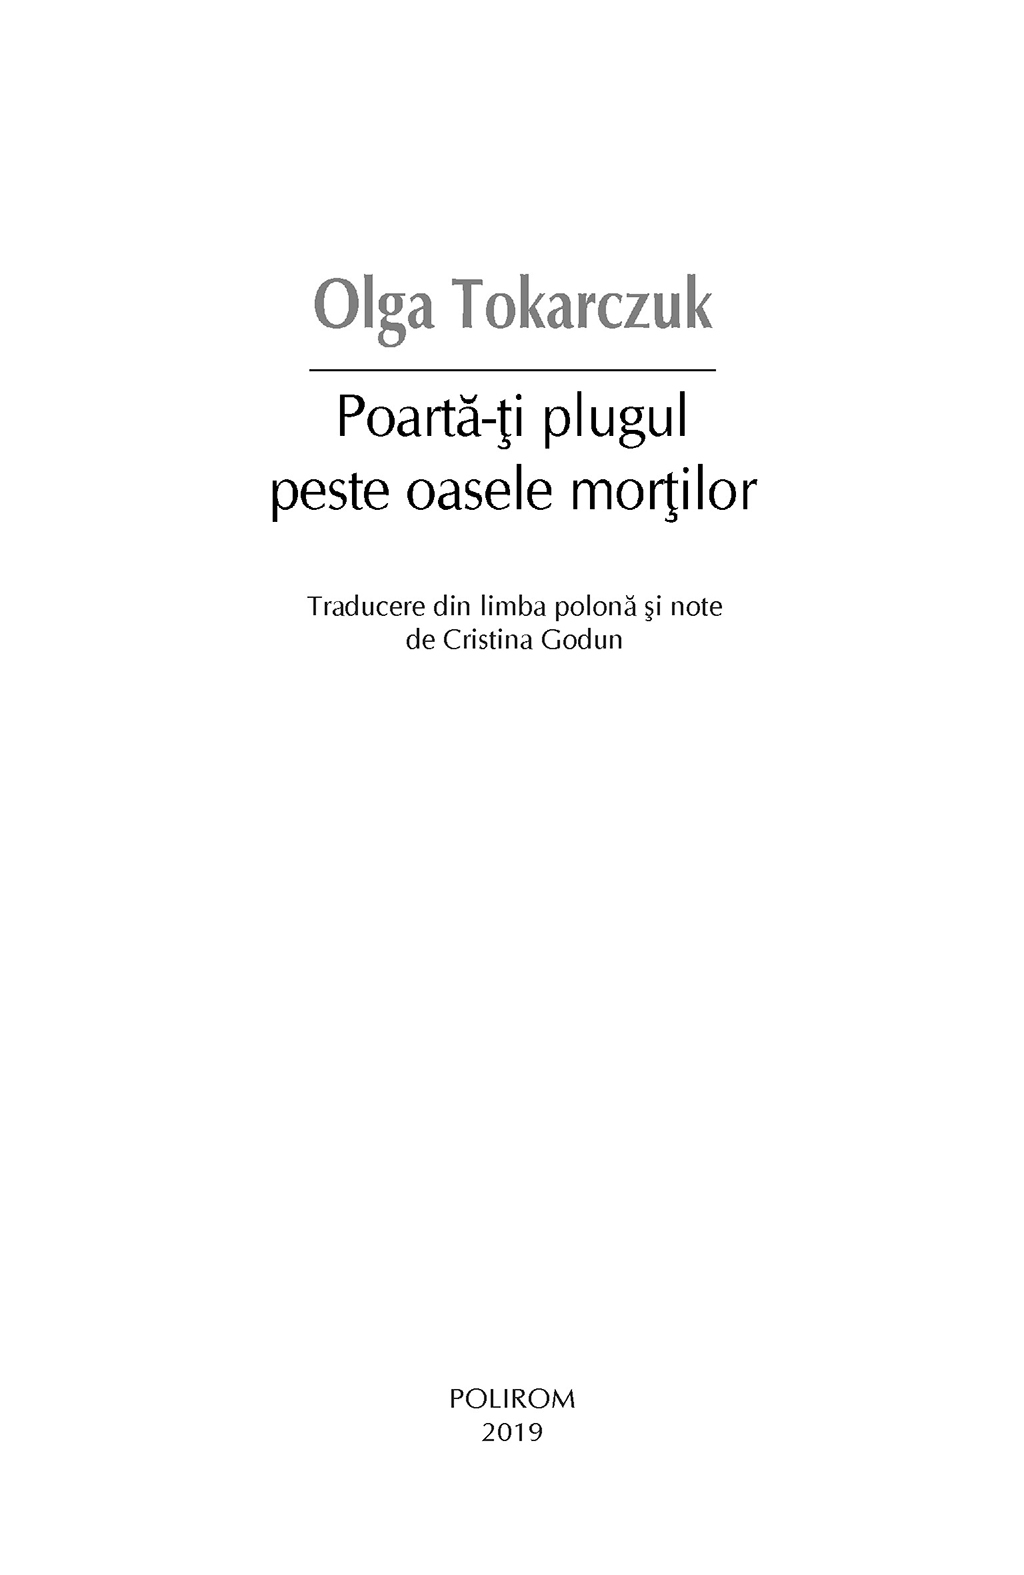 Poarta-ti plugul peste oasele mortilor | Olga Tokarczuk - 3